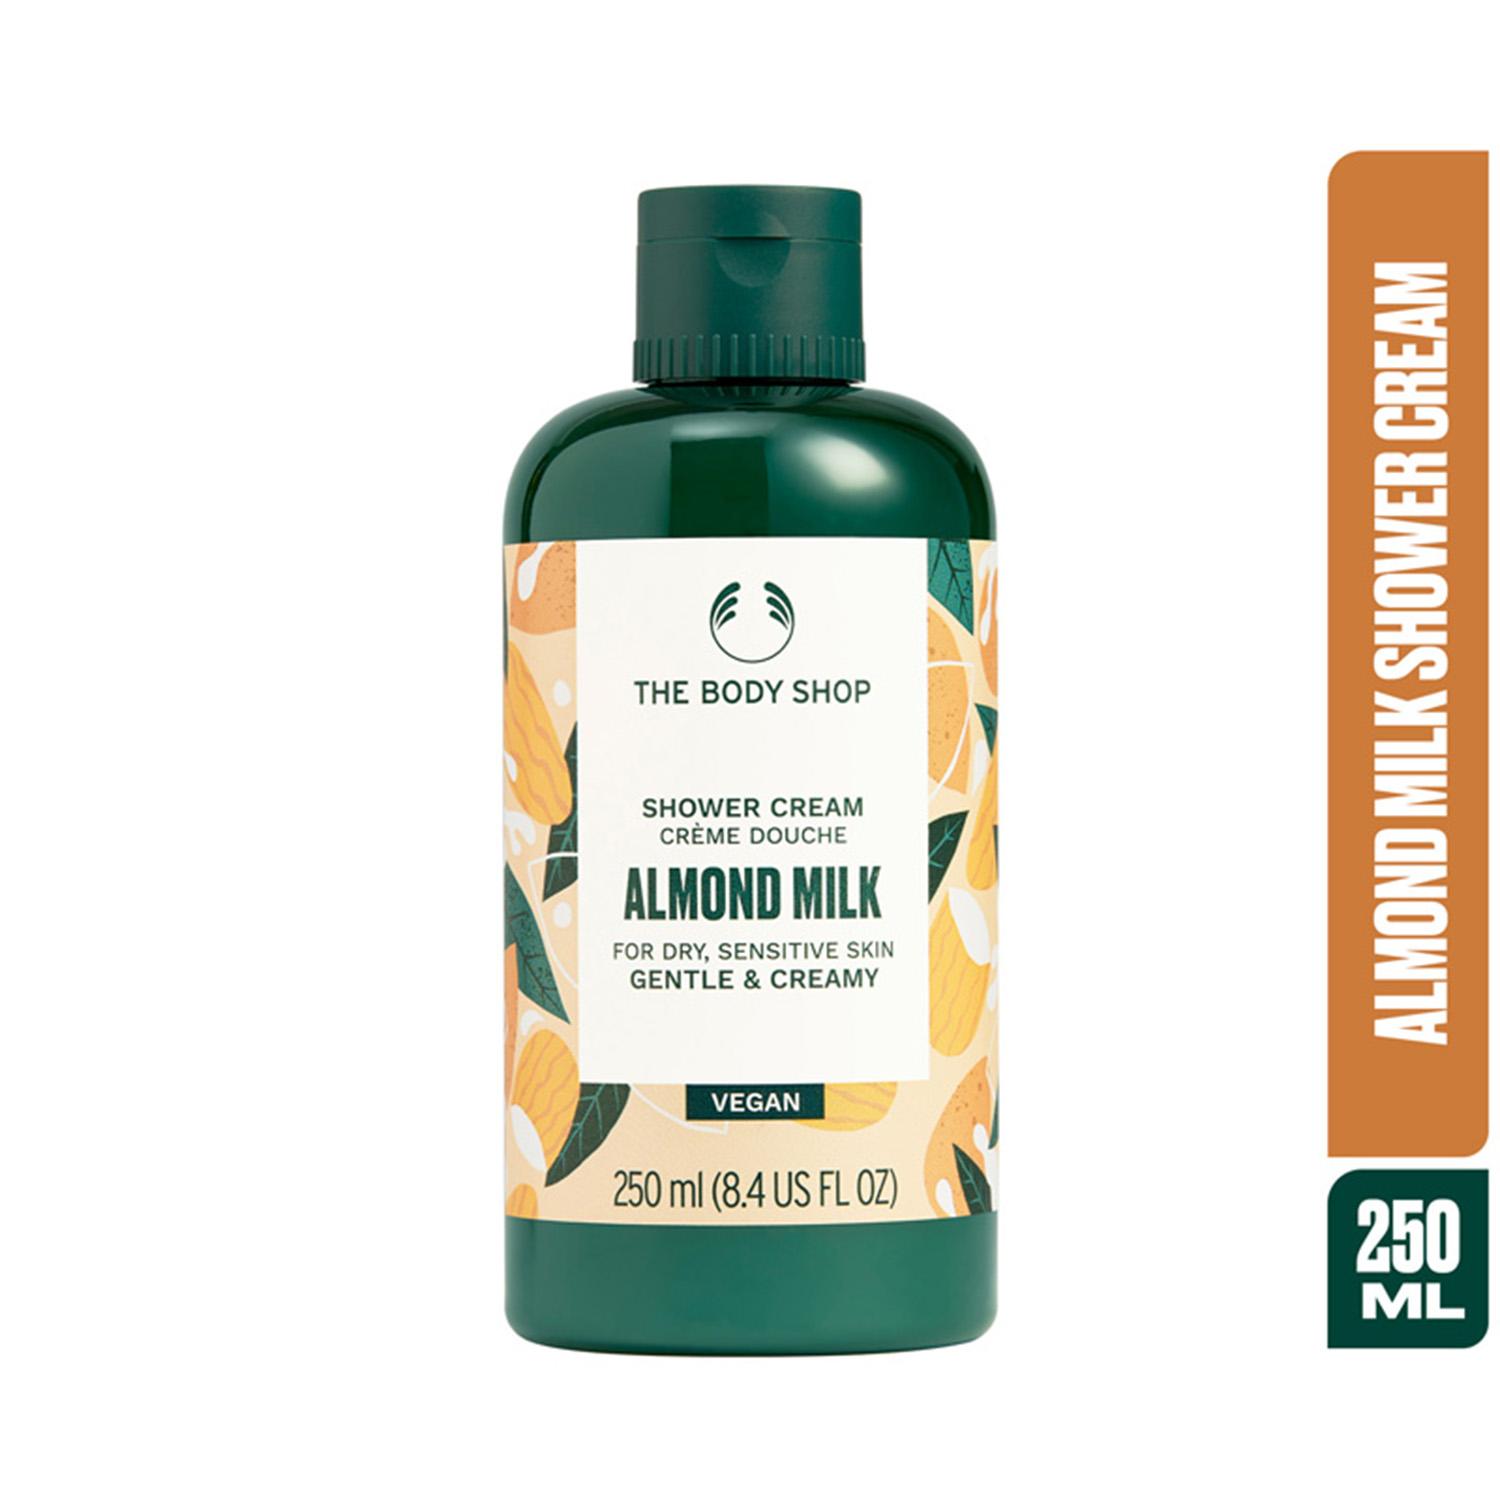 The Body Shop Almond Milk Shower Cream (250ml)